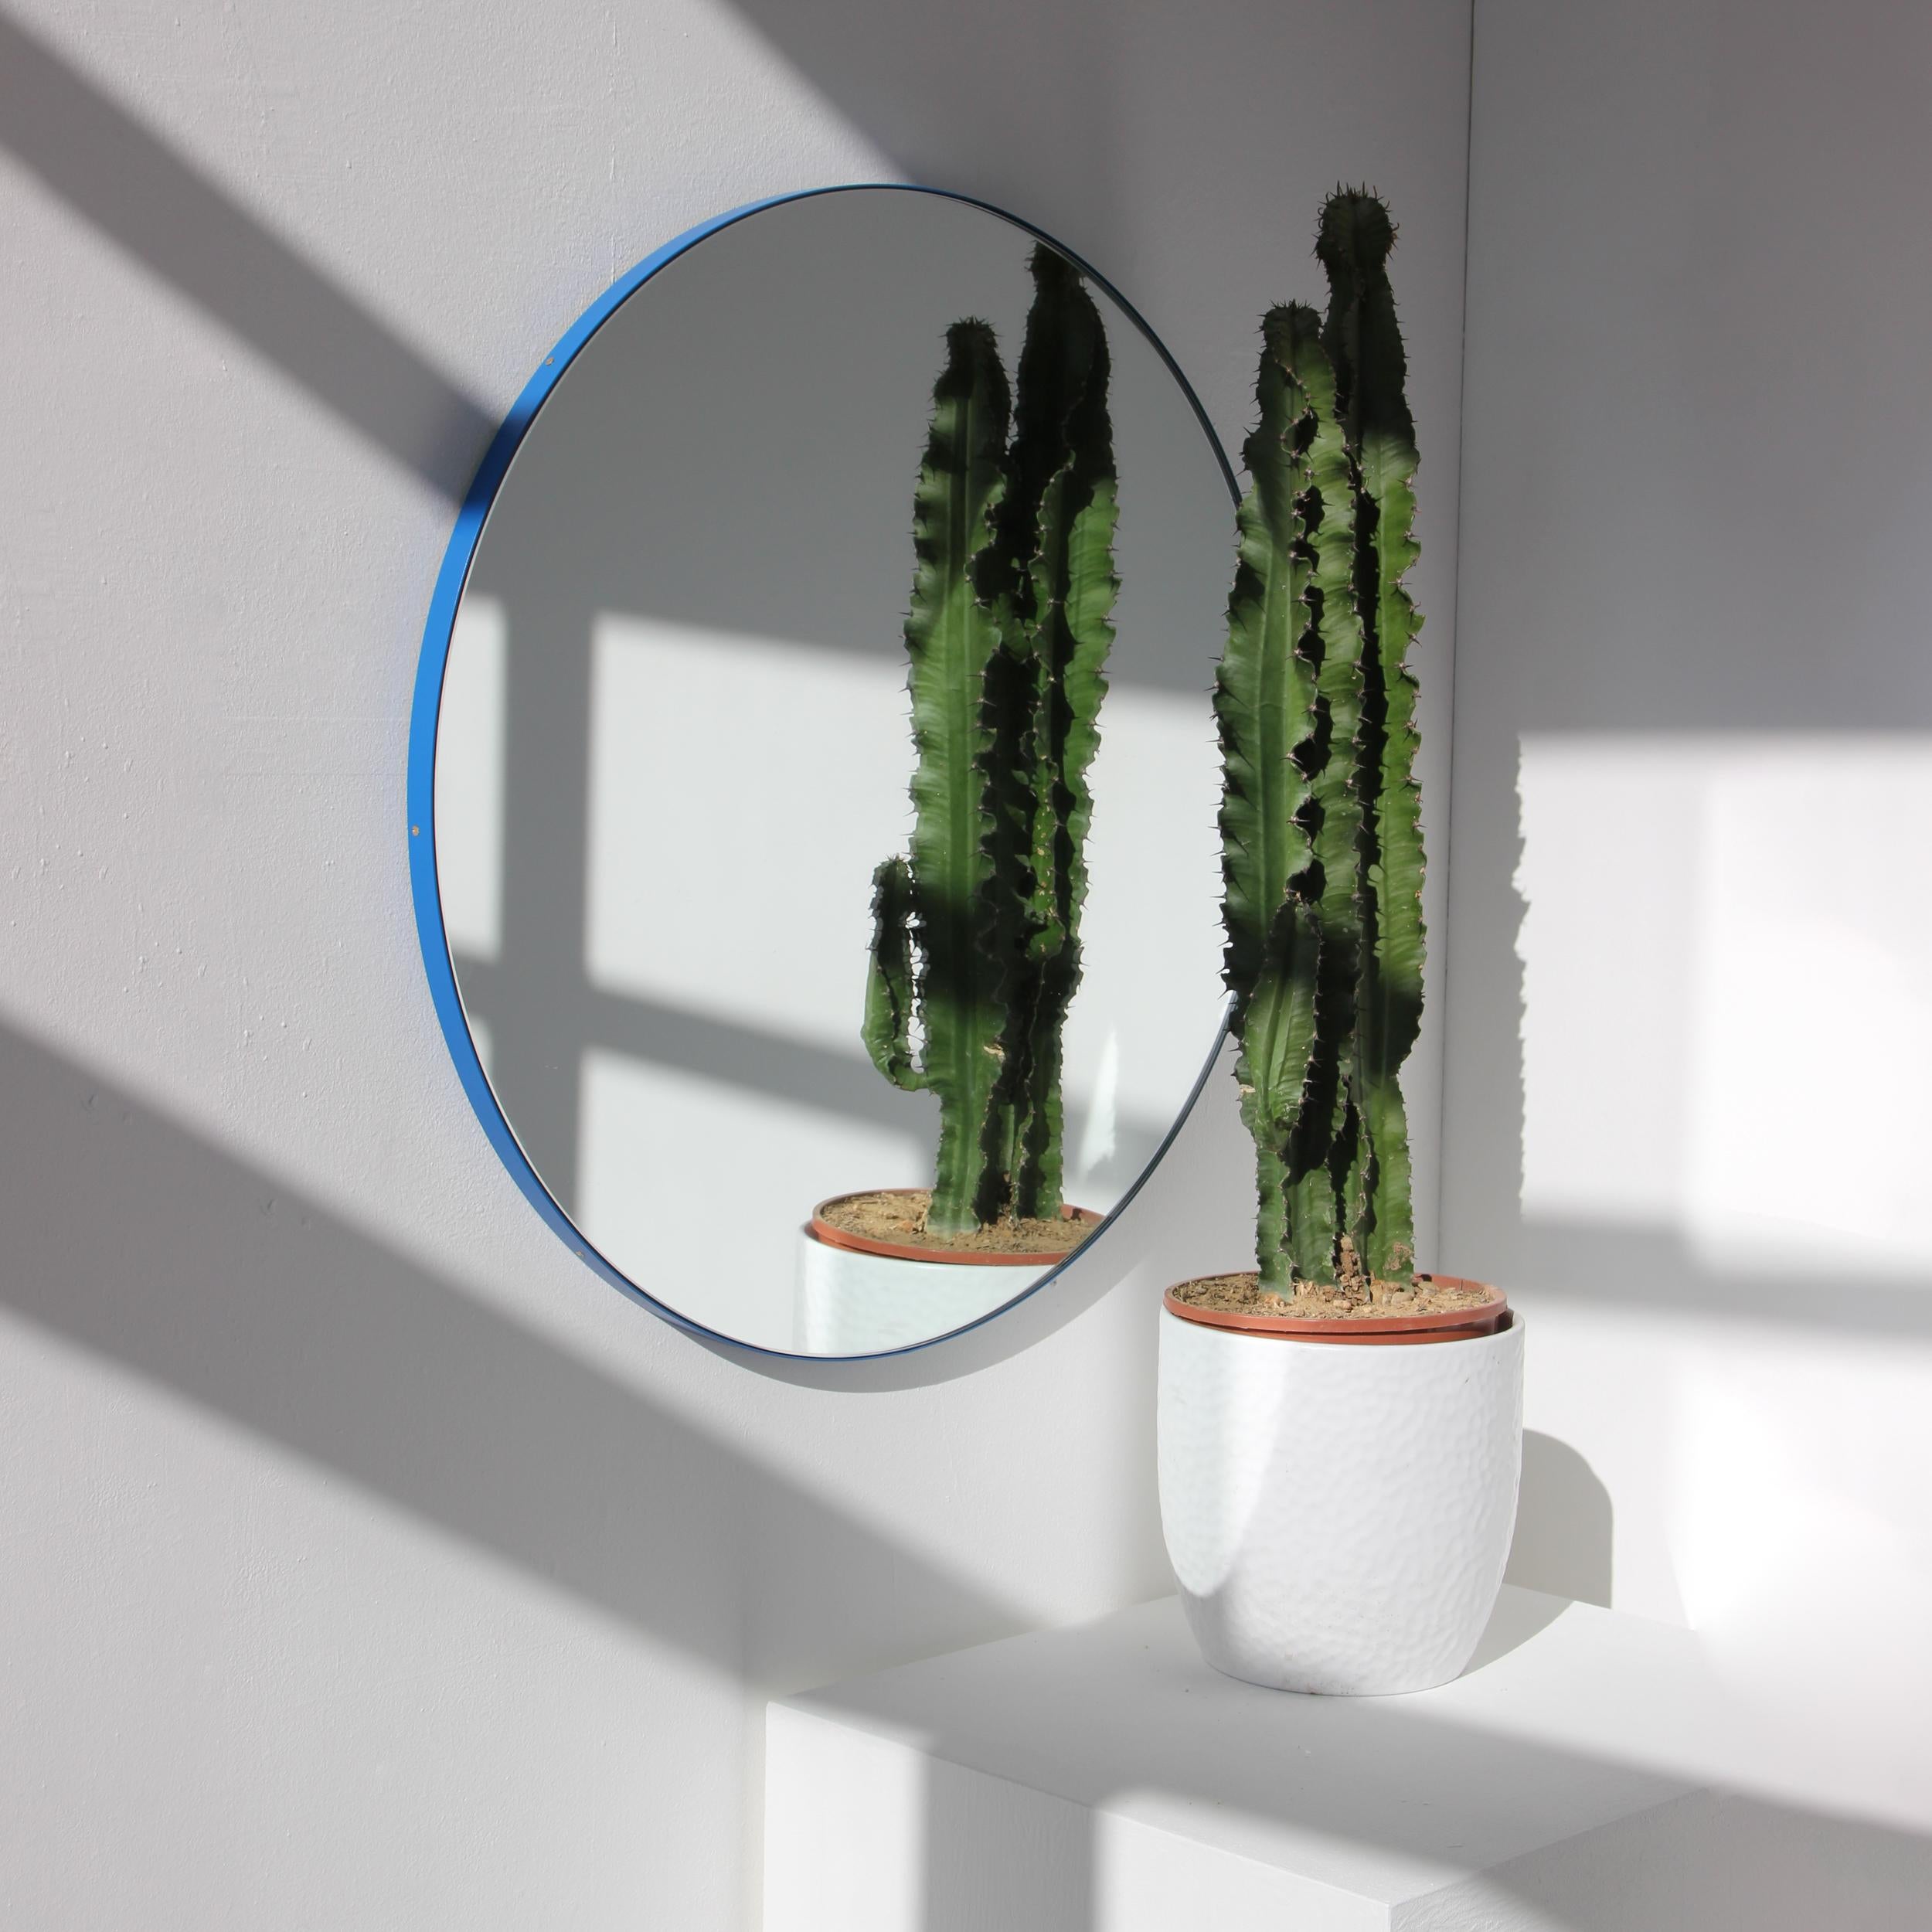 Miroir rond minimaliste avec un cadre moderne en aluminium peint par poudrage en bleu. Conçu et fabriqué à la main à Londres, au Royaume-Uni.

Les miroirs de taille moyenne, grande et extra-large (60, 80 et 100 cm) sont équipés d'un ingénieux